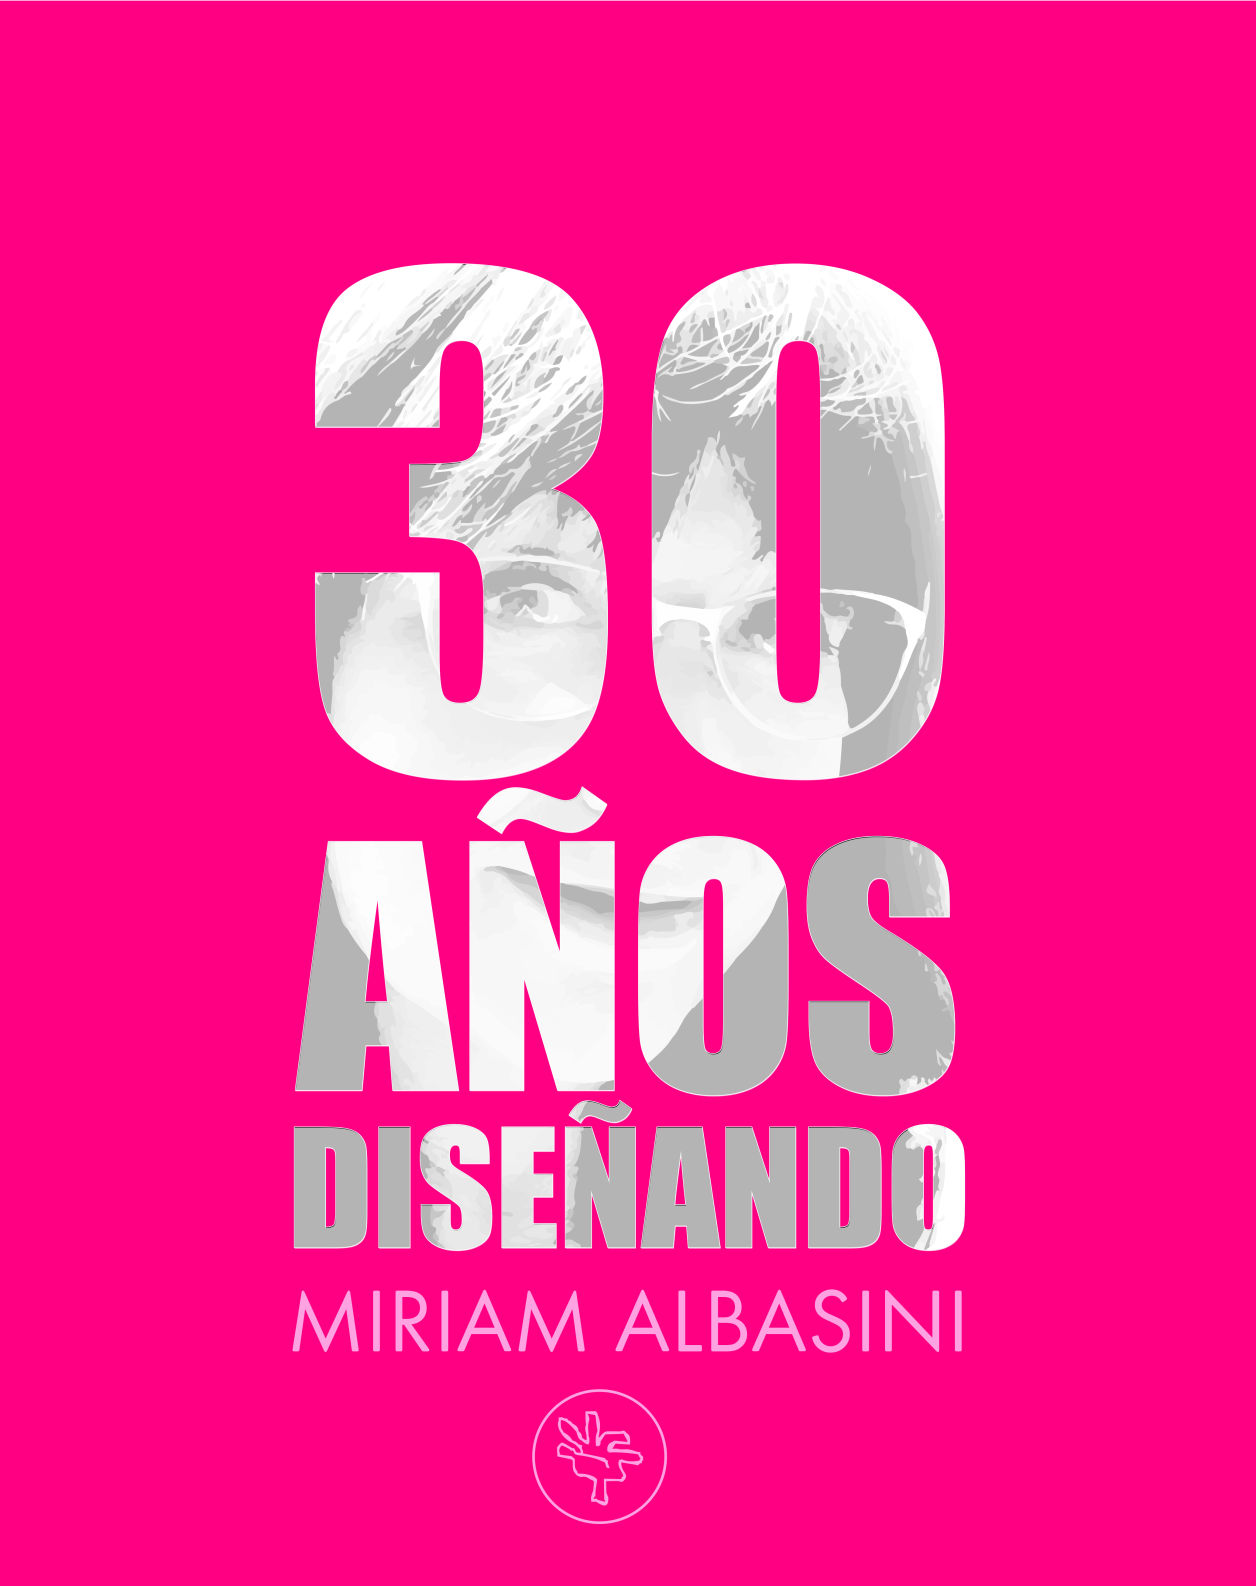 Miriam Albasini